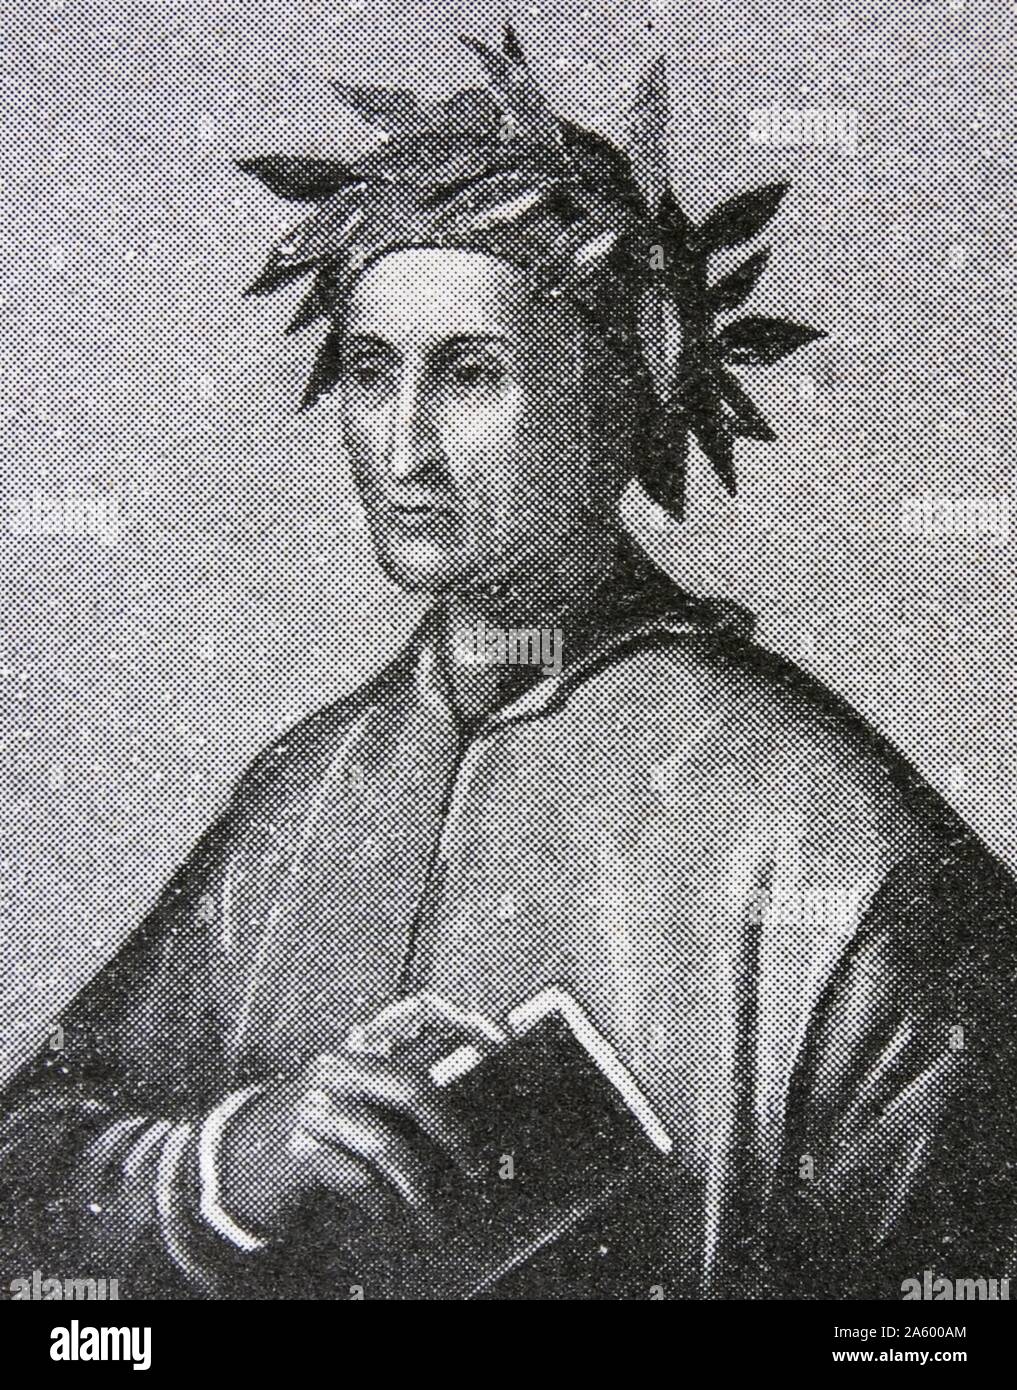 Ritratto di duranti degli Alighieri (1265-1321) poeta italiano del tardo medioevo. Datato xiv secolo Foto Stock